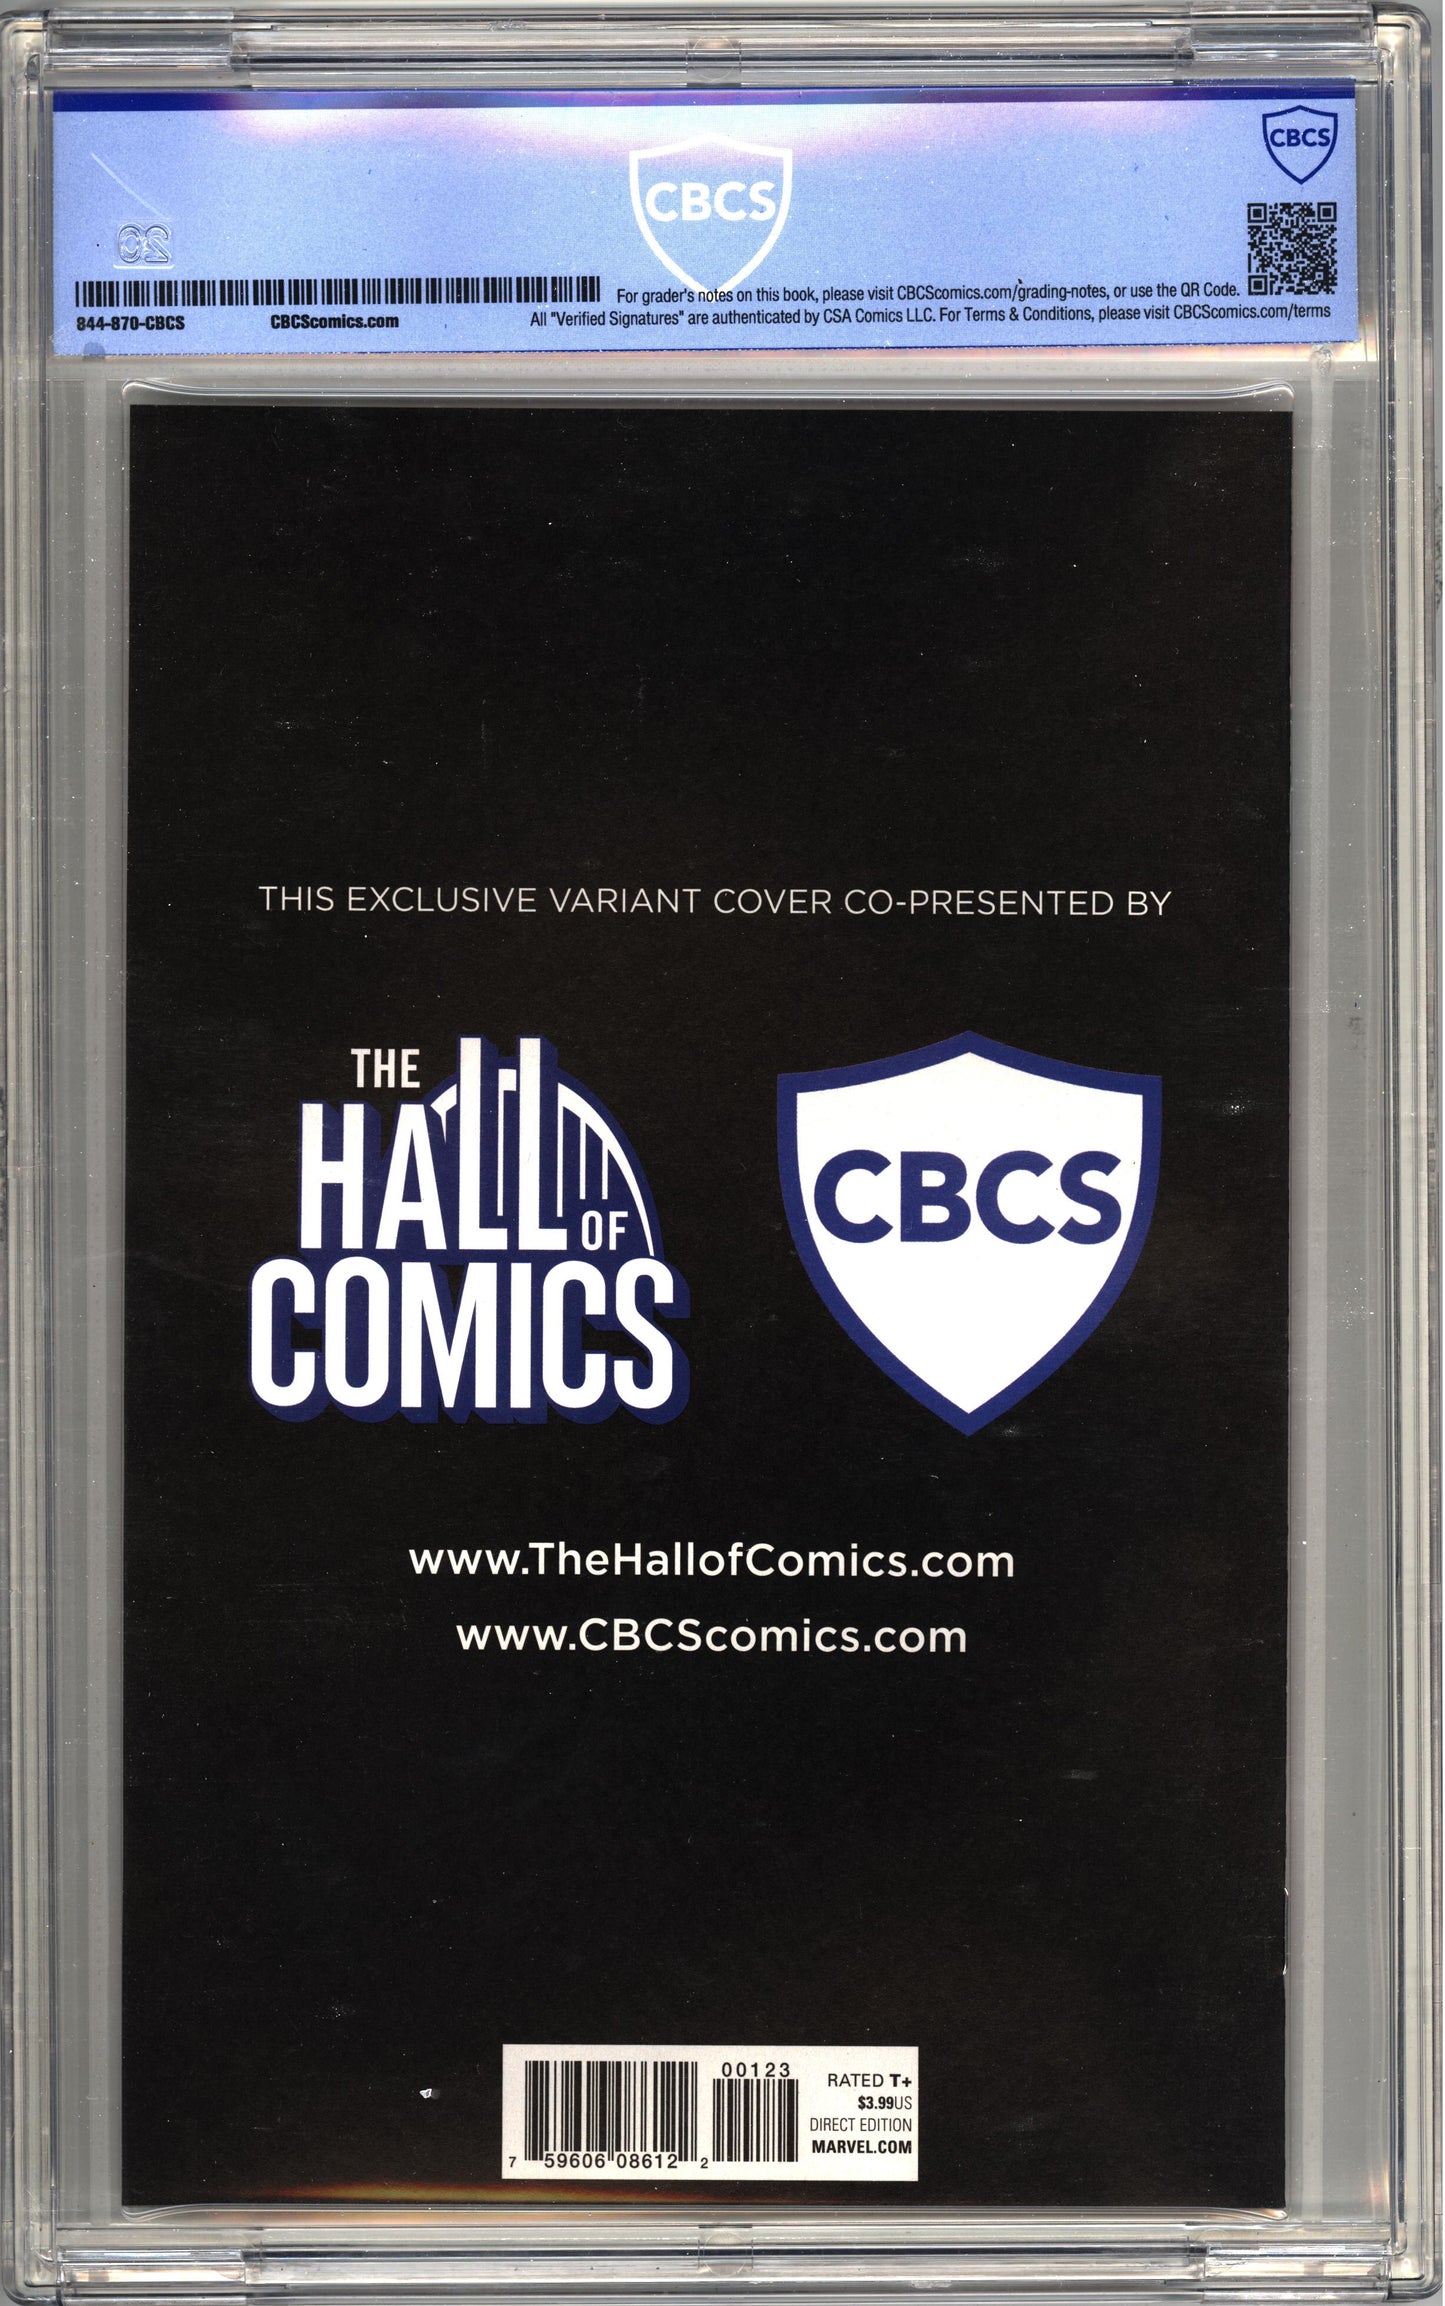 Hulk (2017) # 1 (Cvr C) Couverture de variante spéciale en couleur - CBCS 9.8